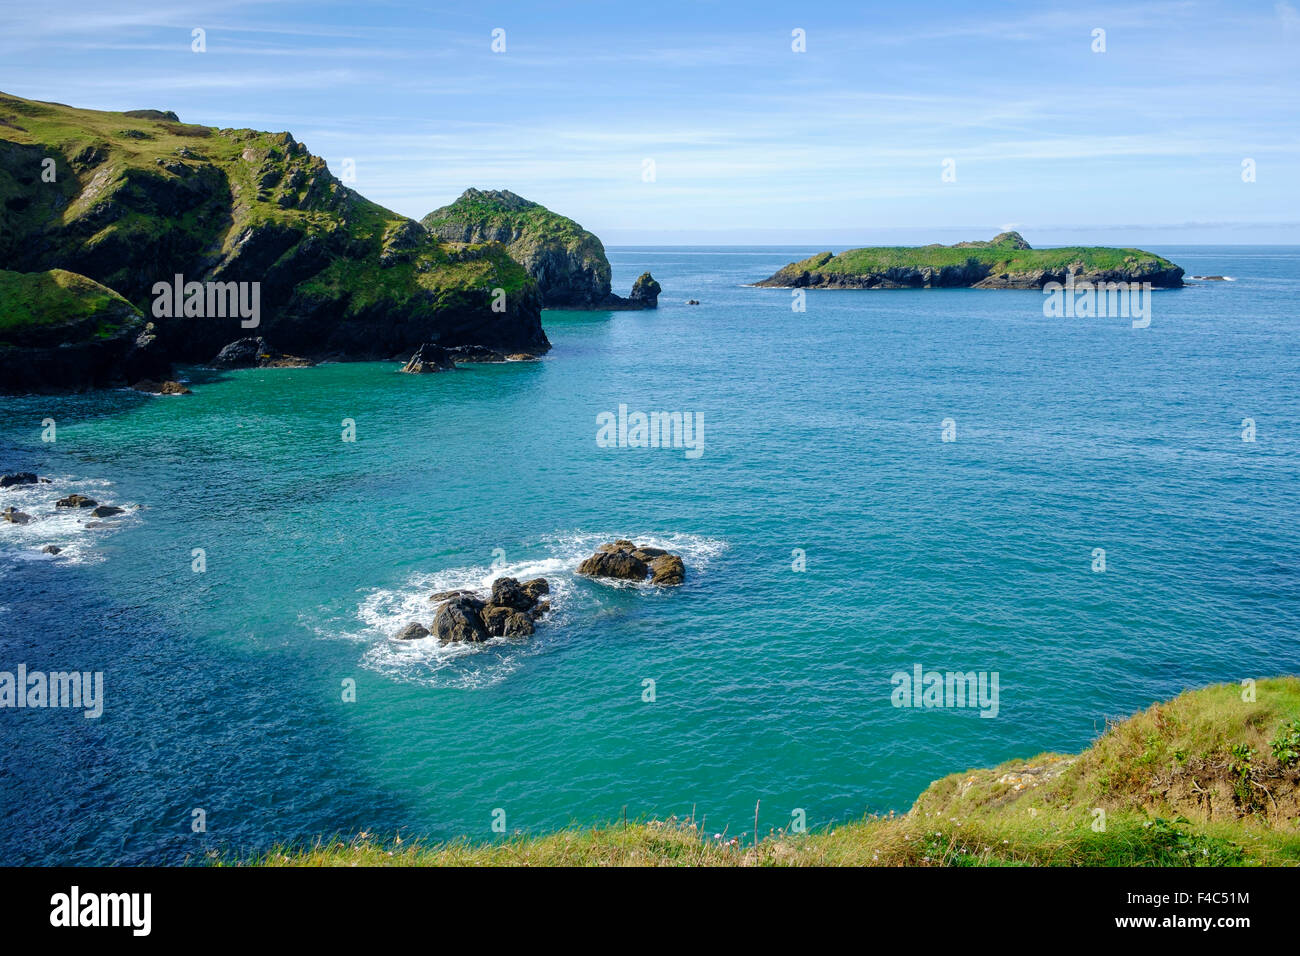 Mullion Island and bay, Cornwall, England, UK Stock Photo